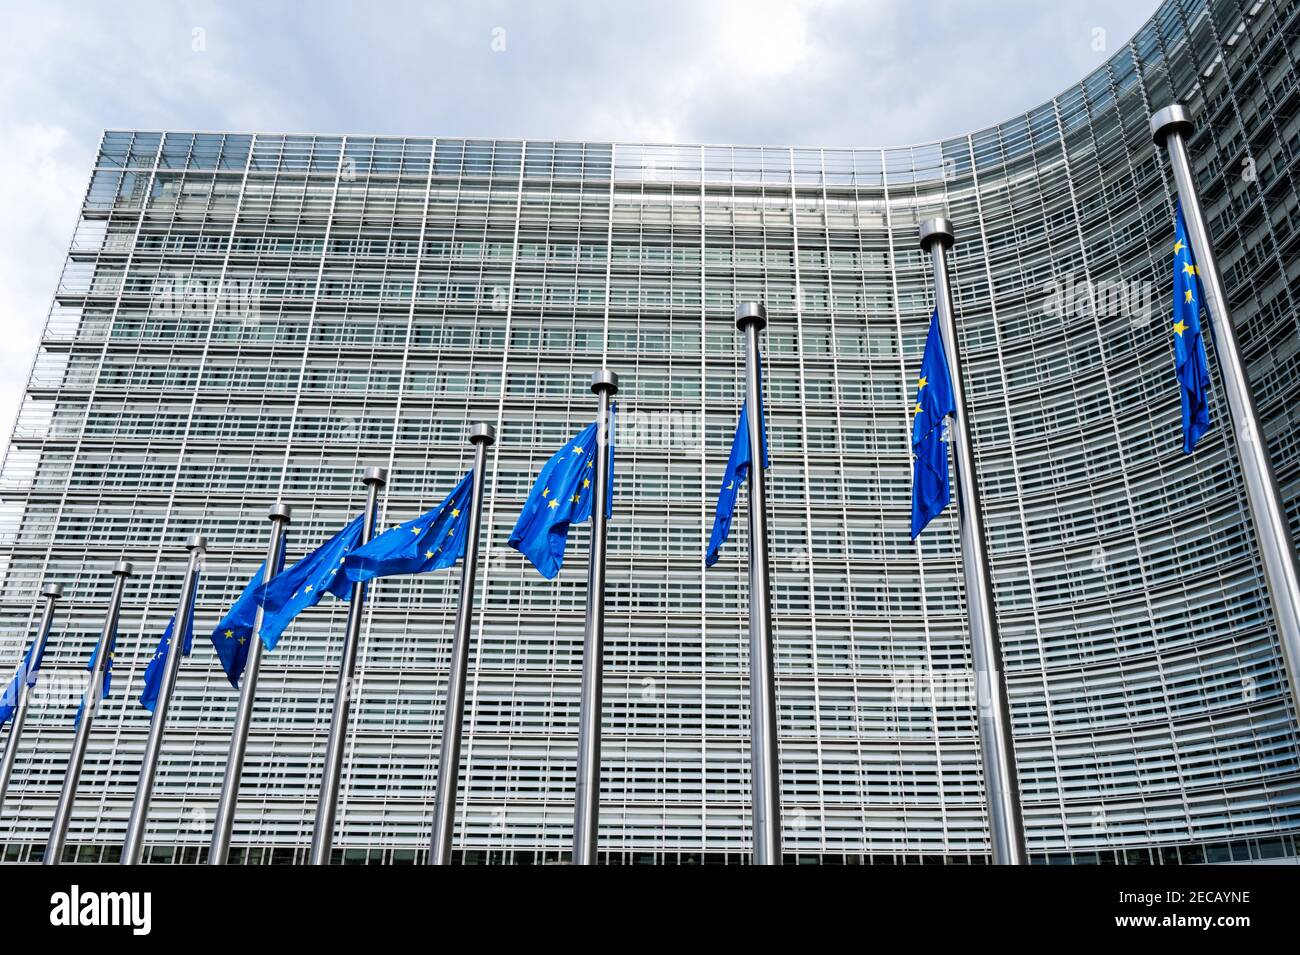 Banderas europeas de la UE frente al edificio Berlaymont, sede de la Comisión Europea, Bruselas, Bélgica Foto de stock